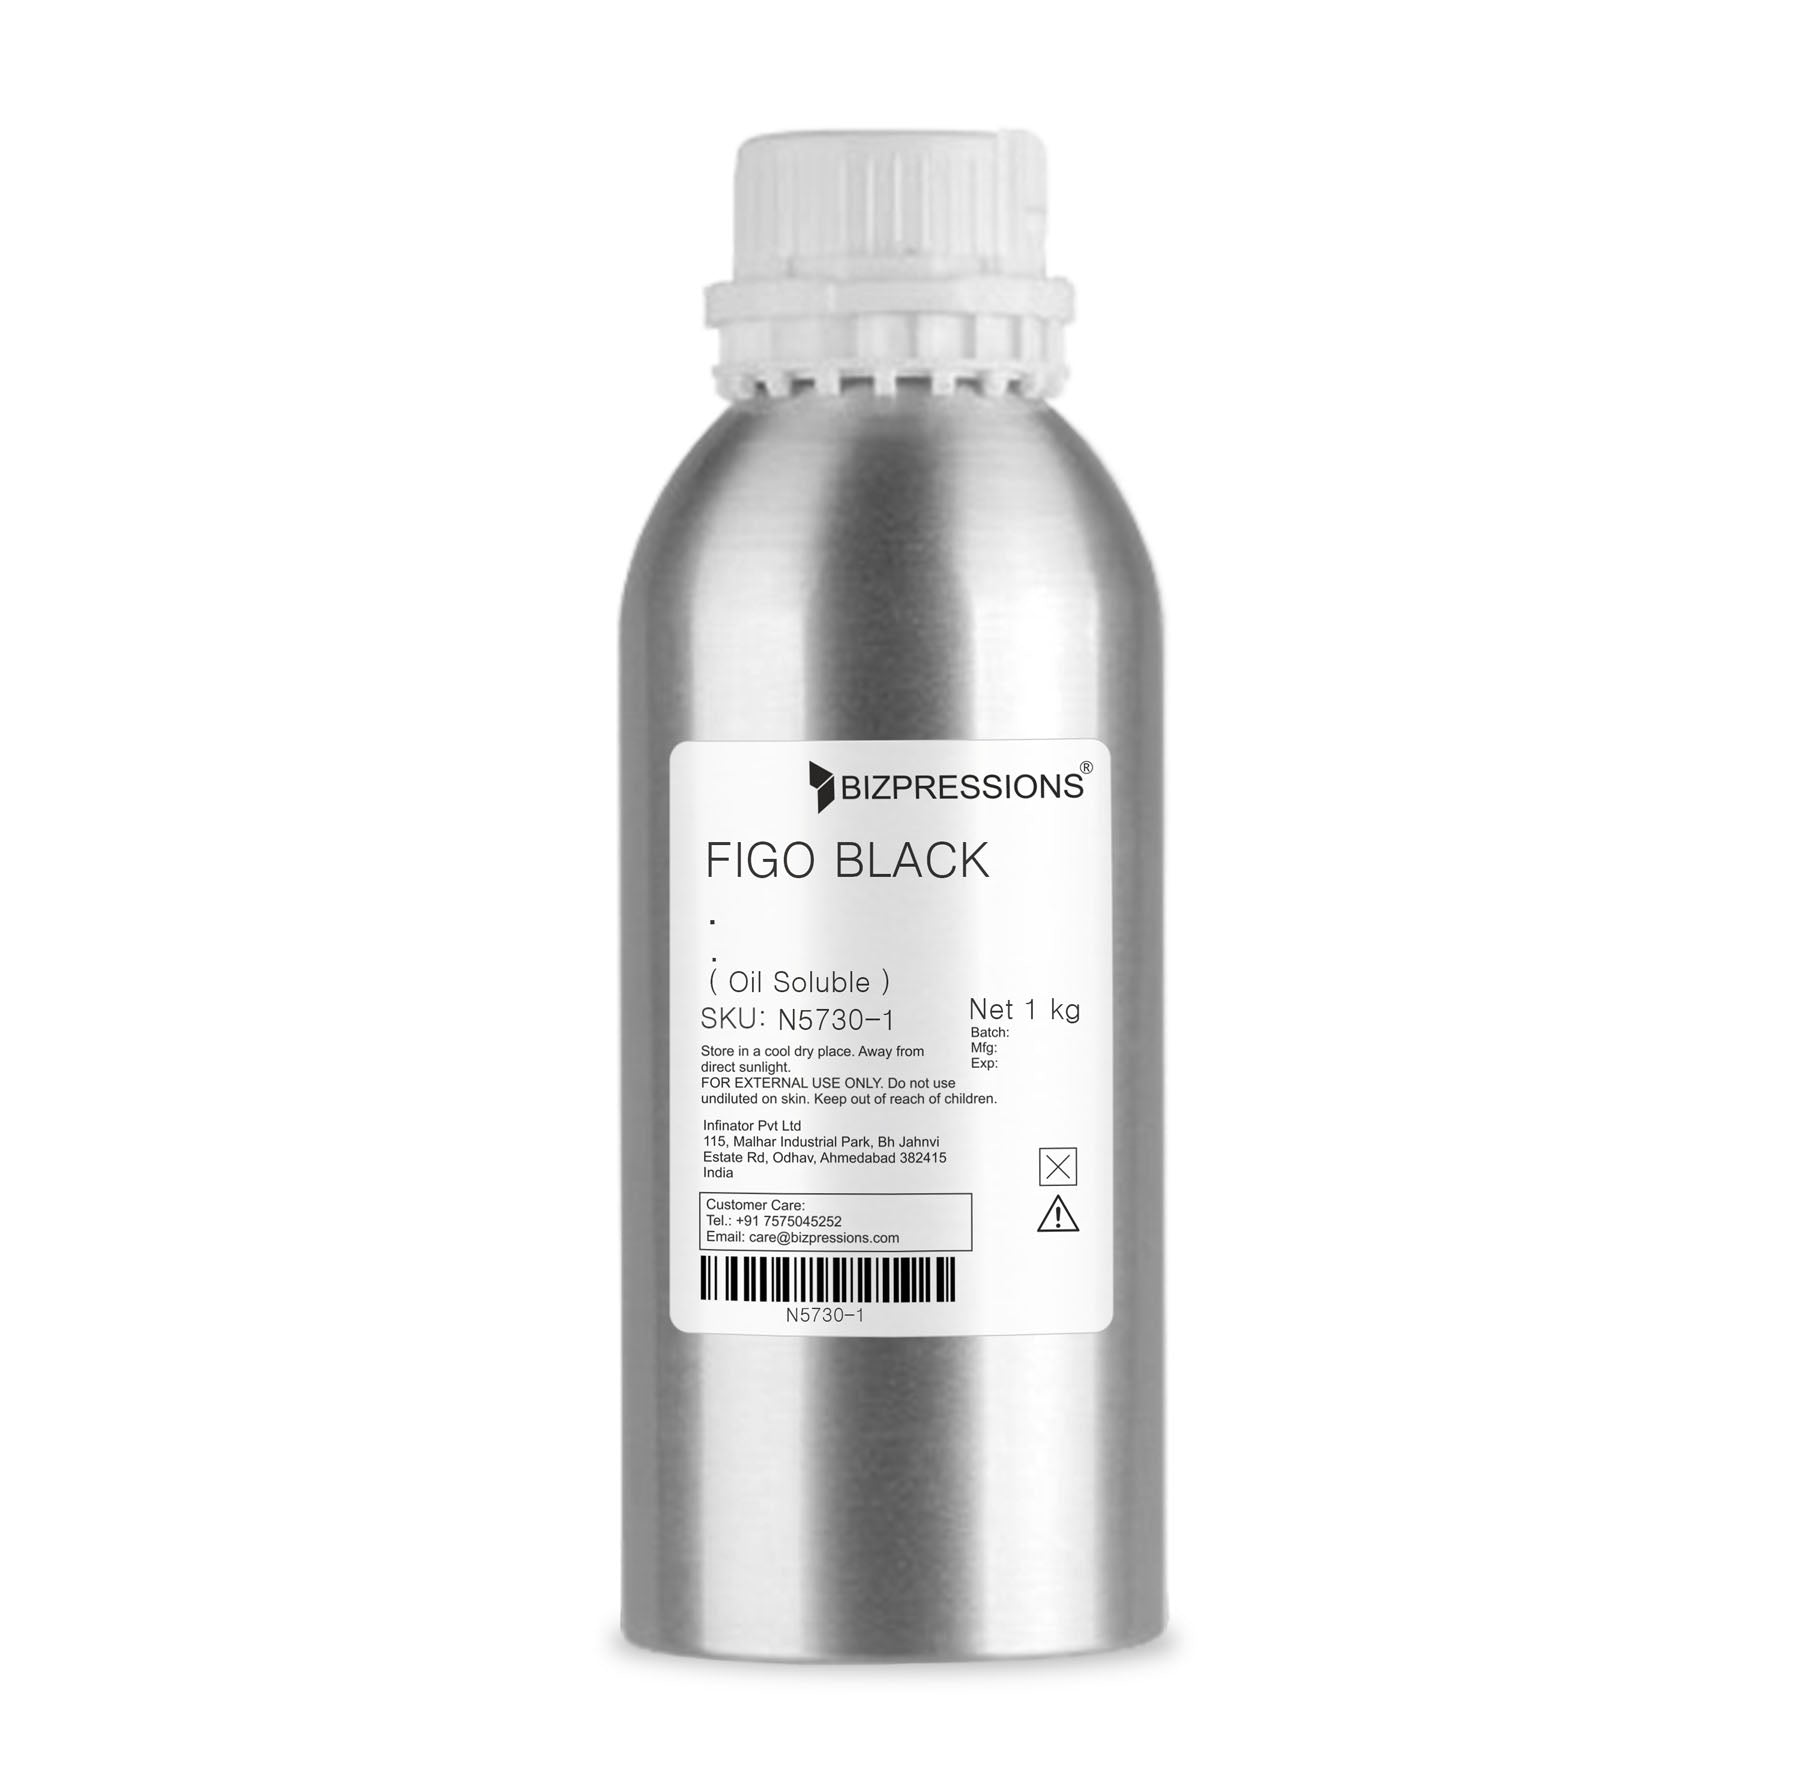 FIGO BLACK - Fragrance ( Oil Soluble ) - 1 kg